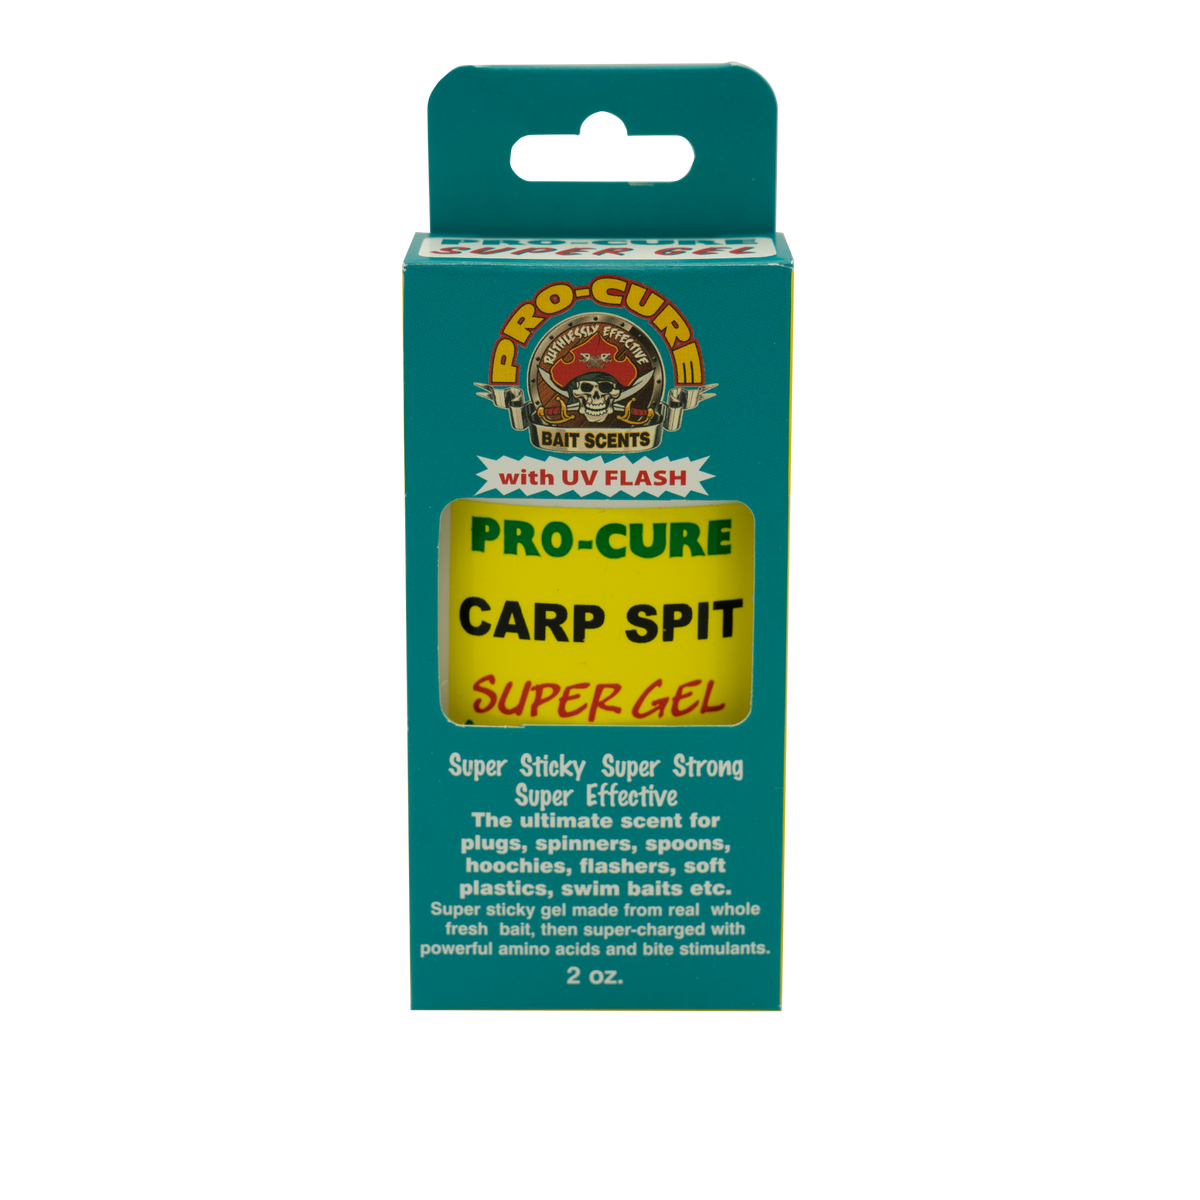 CARP SPIT SUPER GEL – Pro-Cure, Inc